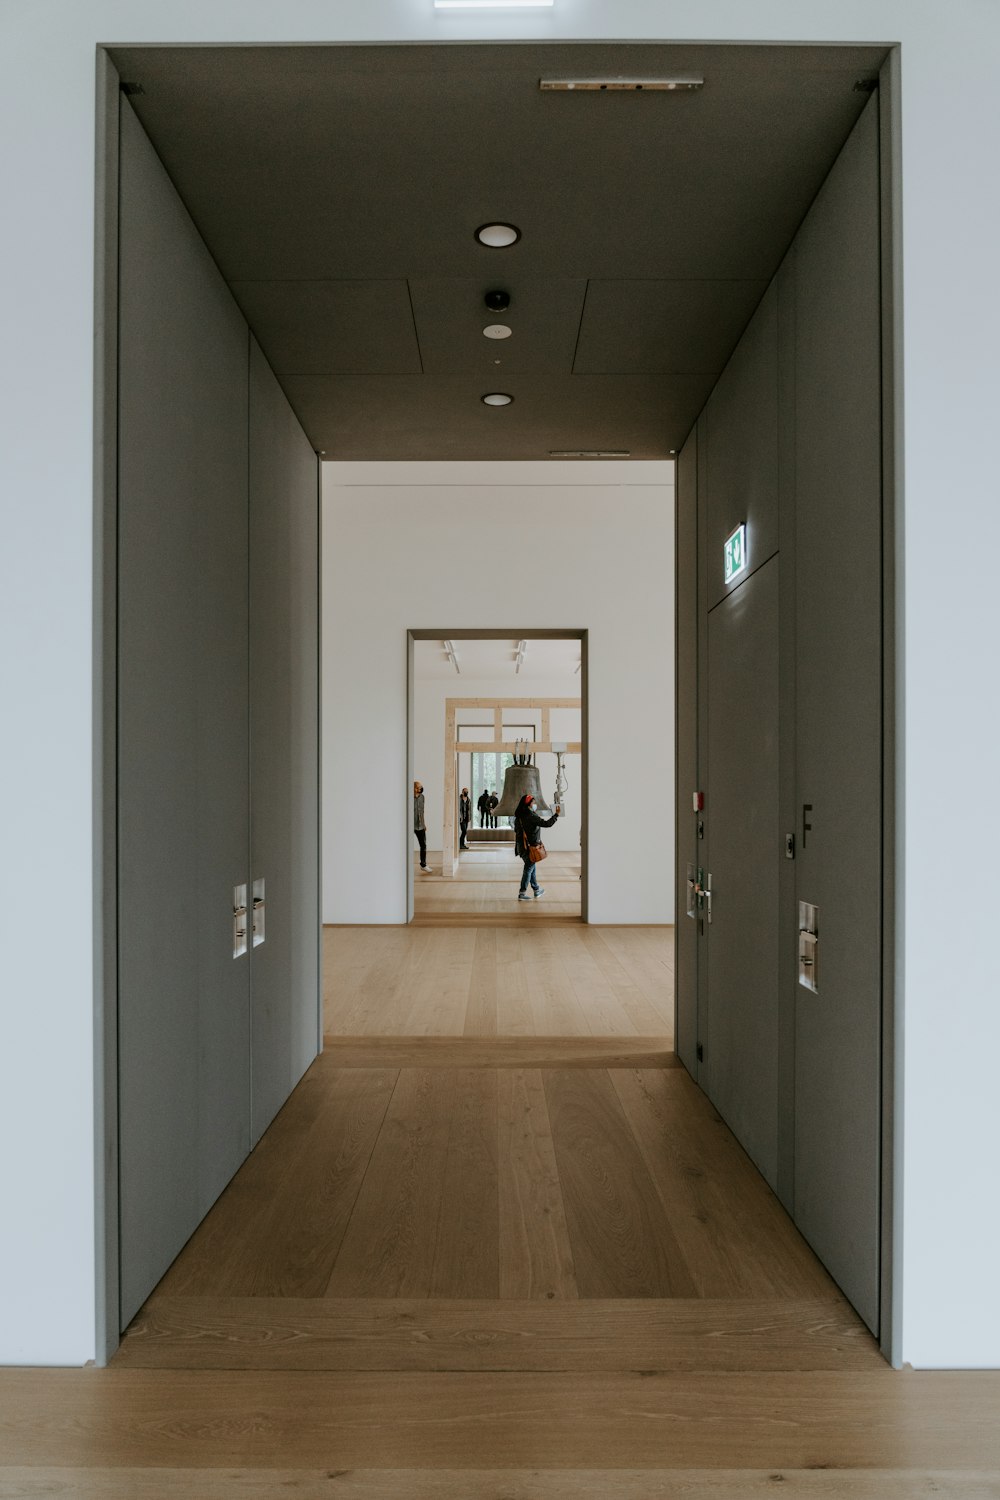 une personne marchant dans un couloir d’un immeuble